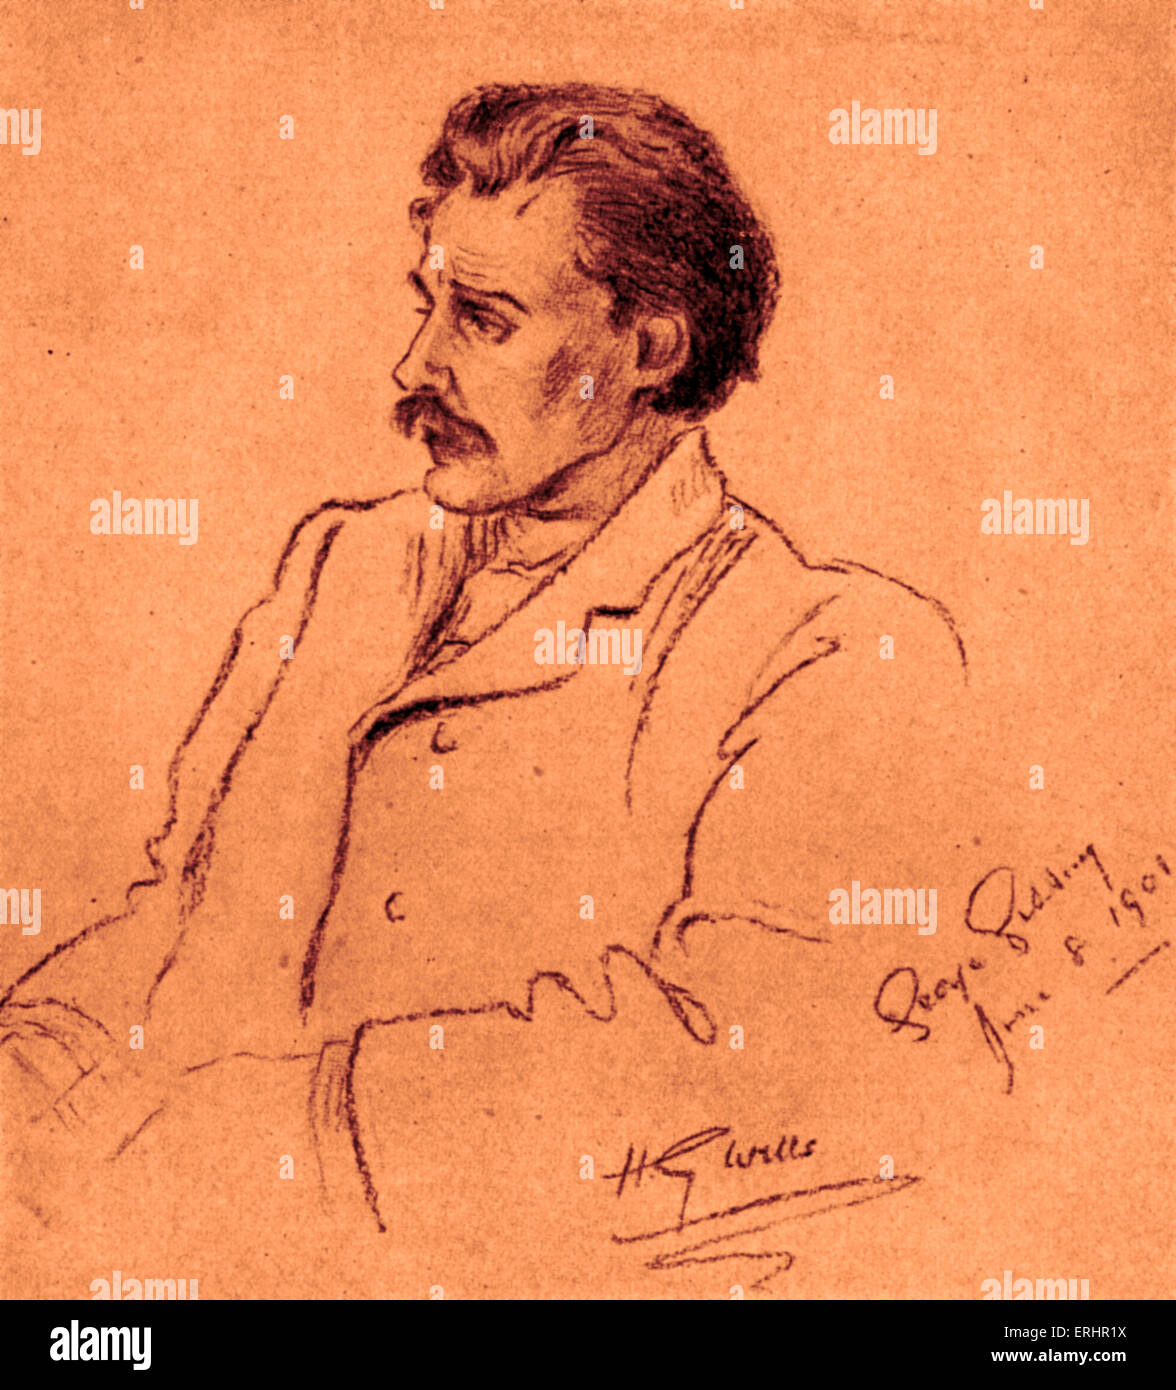 George Gissing - Porträt des englischen Romanciers. Zeichnung von seinem Freund, der englische Schriftsteller H. G. Wells. 22. November 1857 – 28. Dezember 1903. Stockfoto